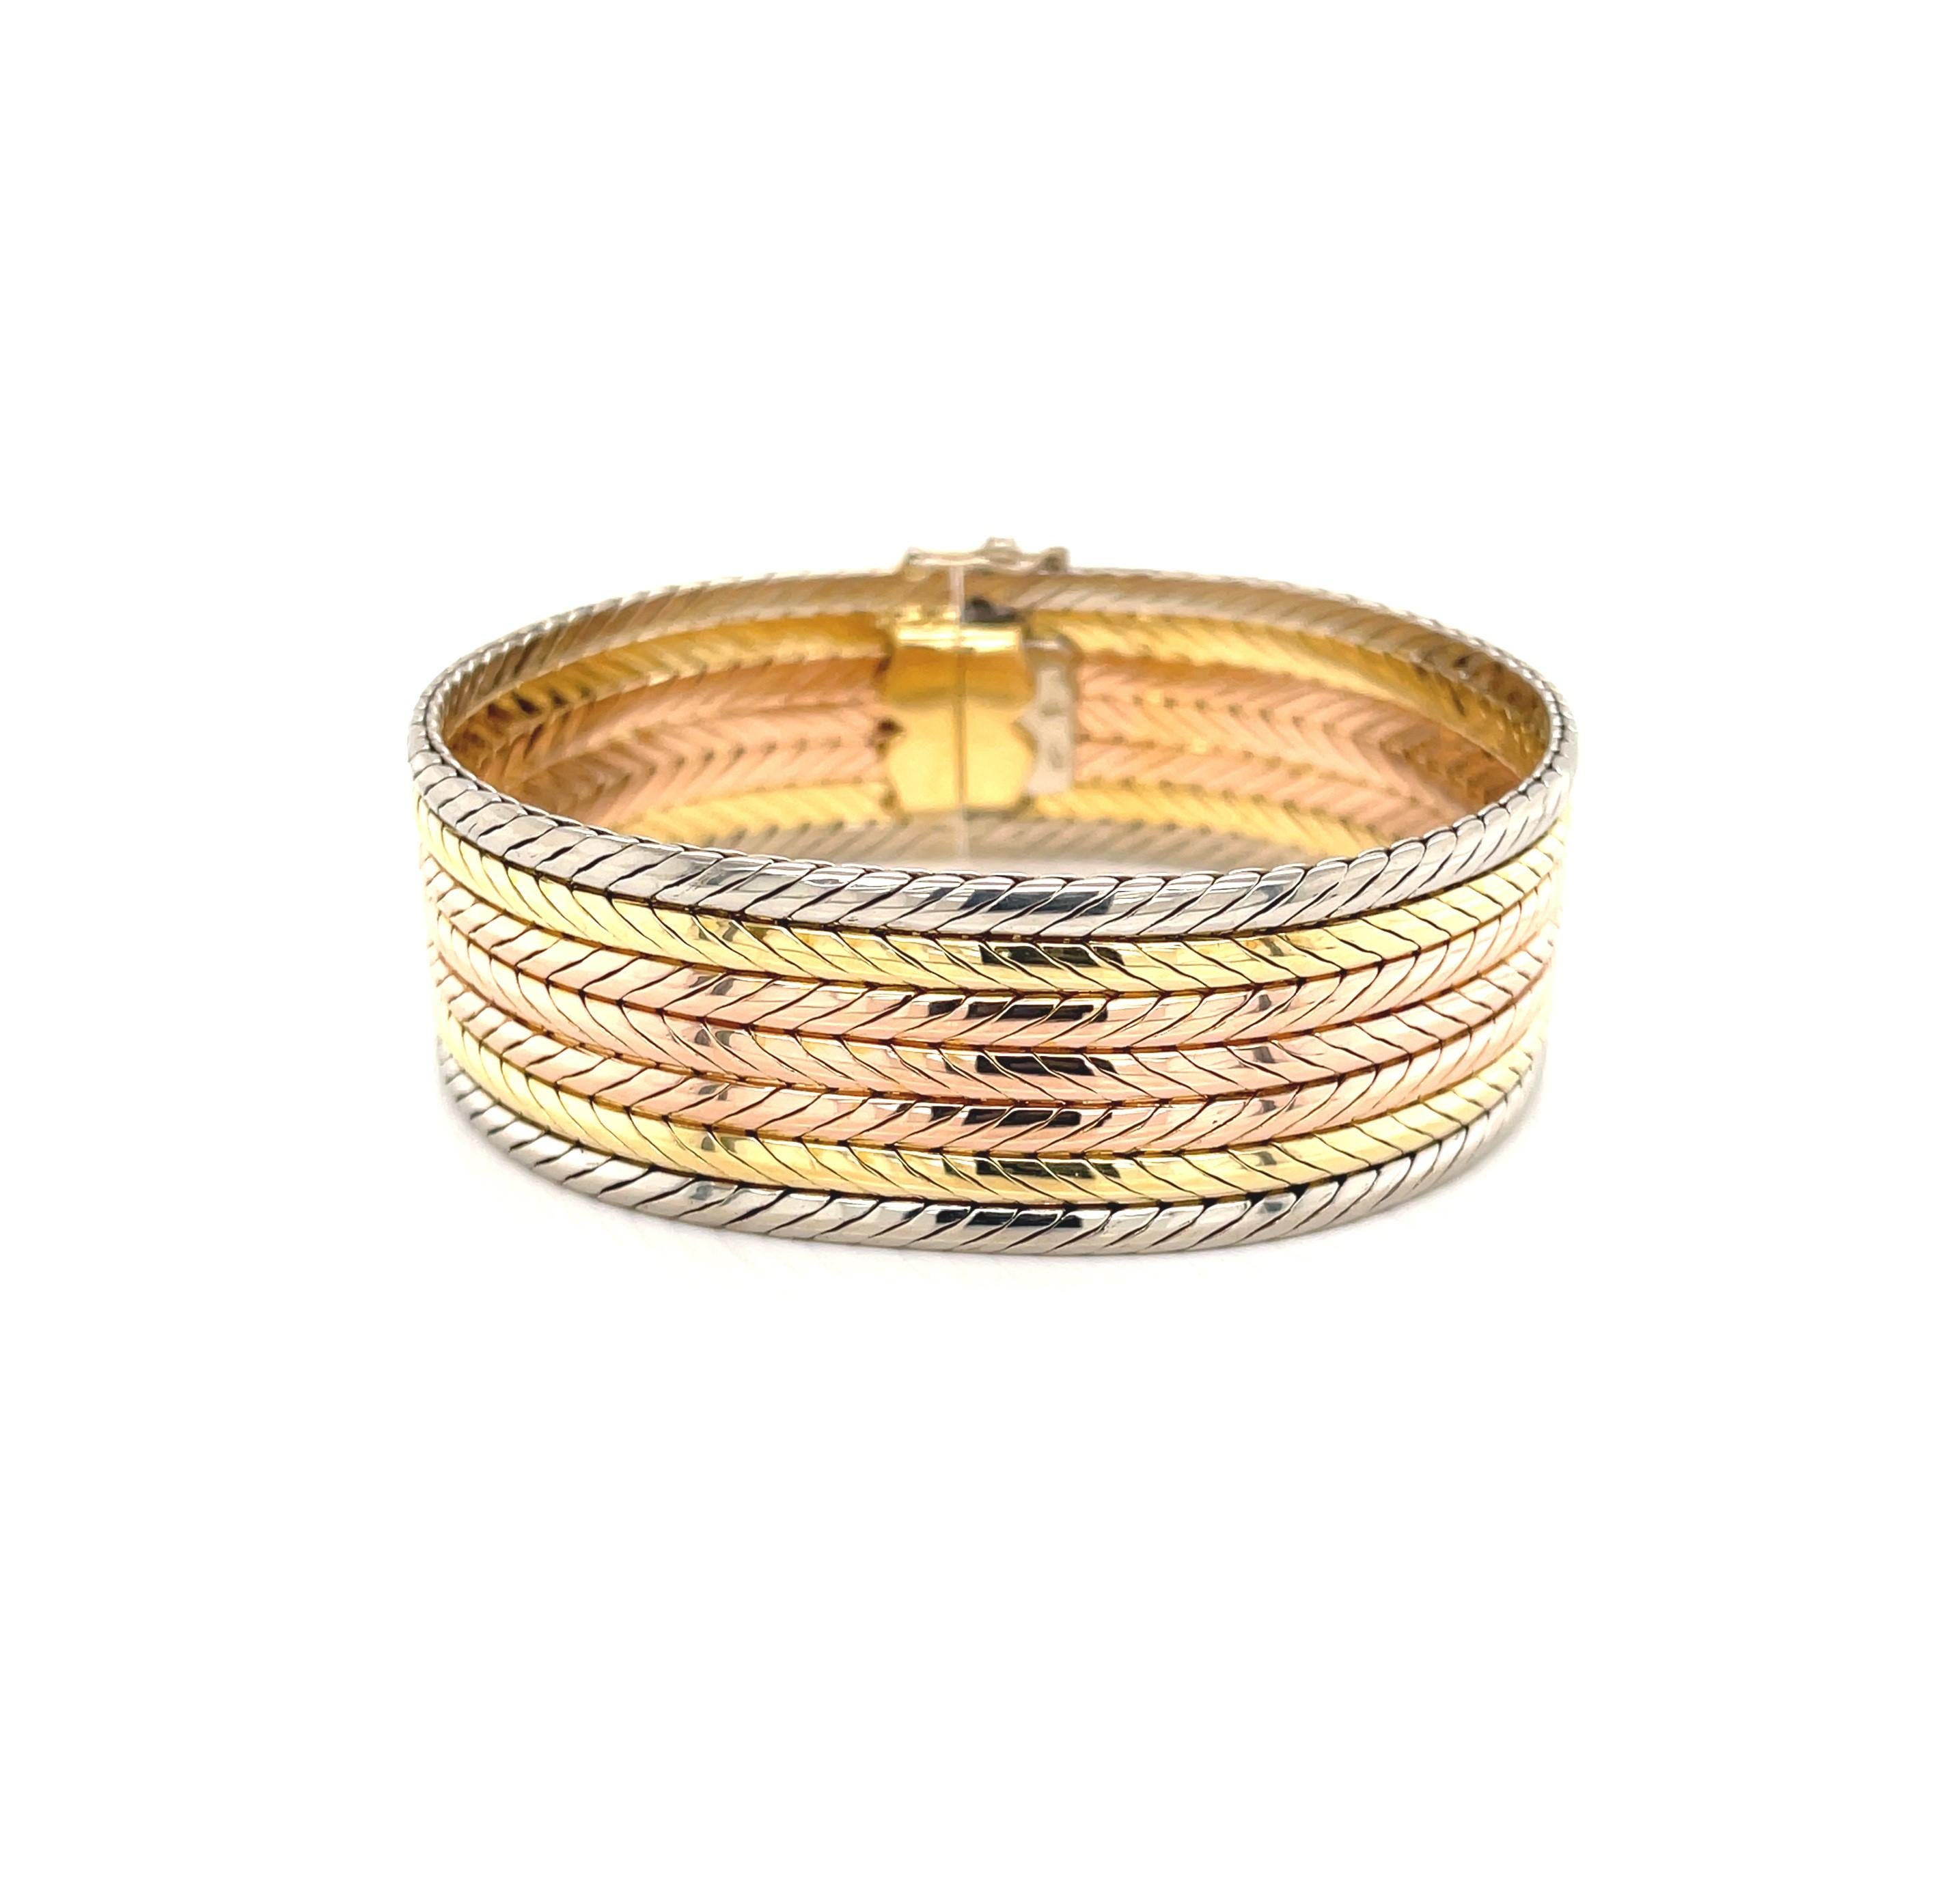 De l'or rose, jaune et blanc brillant de 18 carats en chaîne serpentine arrondie est superposé pour créer ce bracelet audacieux et captivant. Son arc-en-ciel doré et coloré rend cette pièce très polyvalente
 et la largeur généreuse de 3/4 de pouce